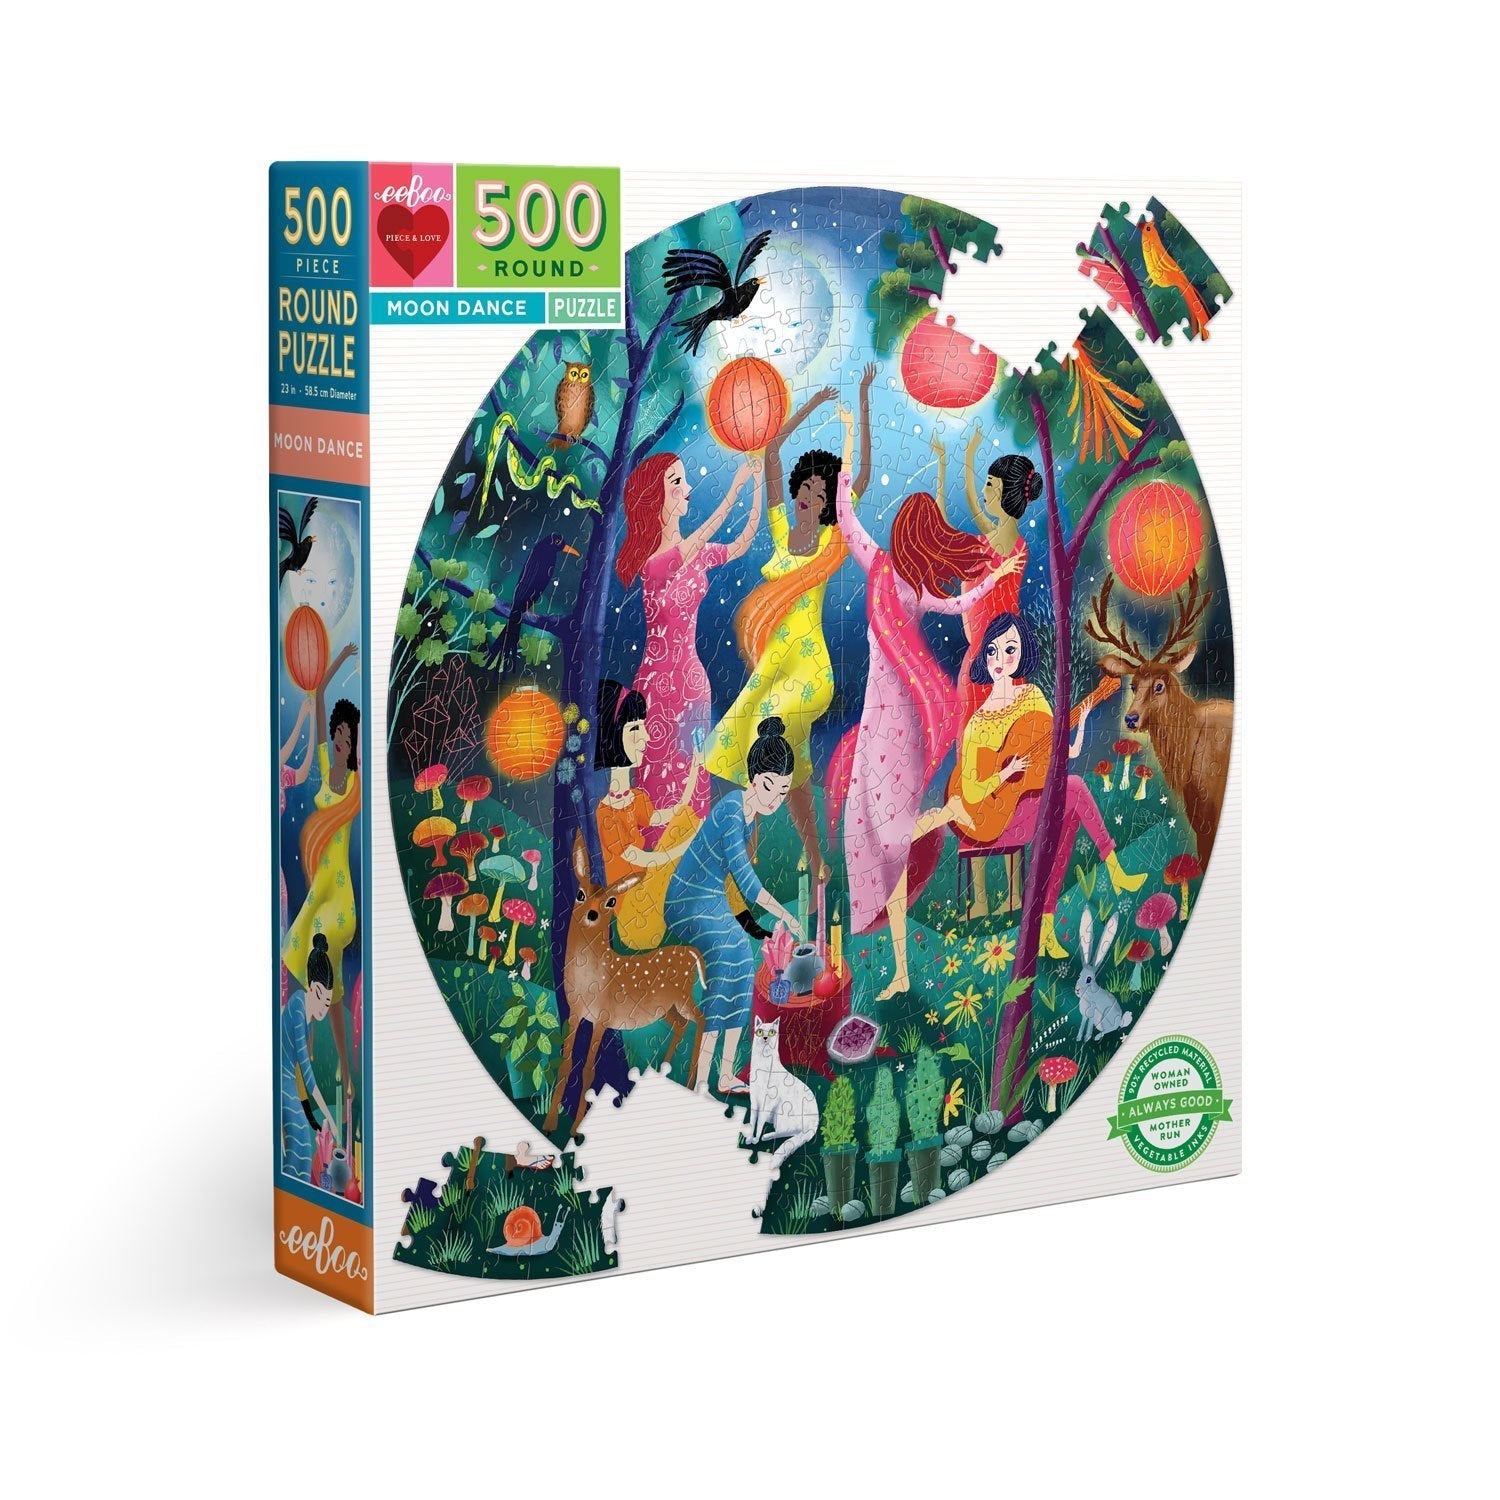 Puzzle Baile de la luna - 500 piezas